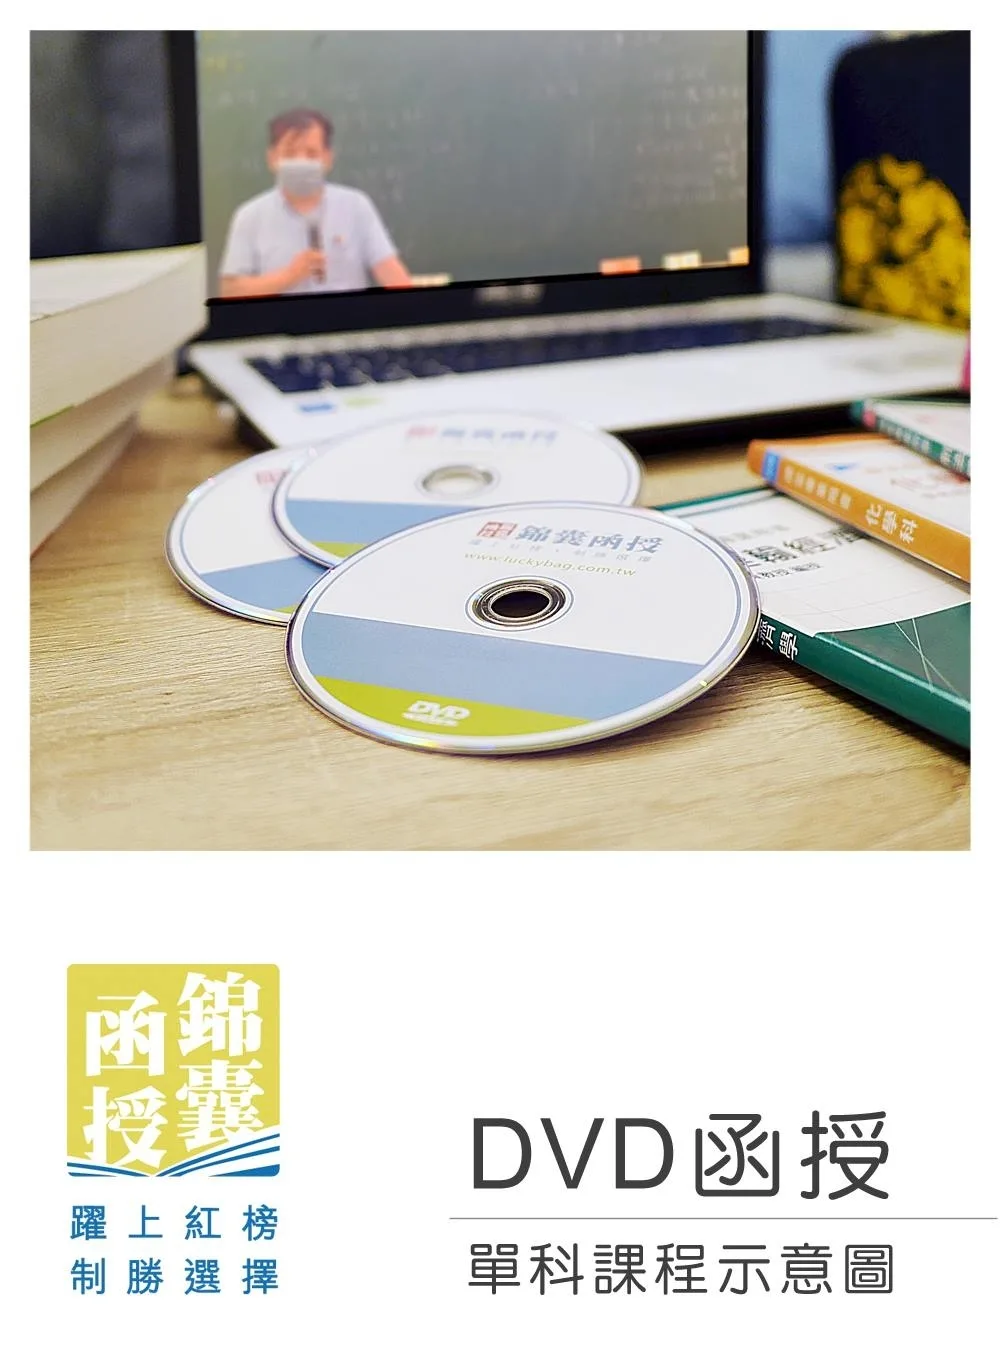 【DVD函授】監獄學-單科課程(111版)